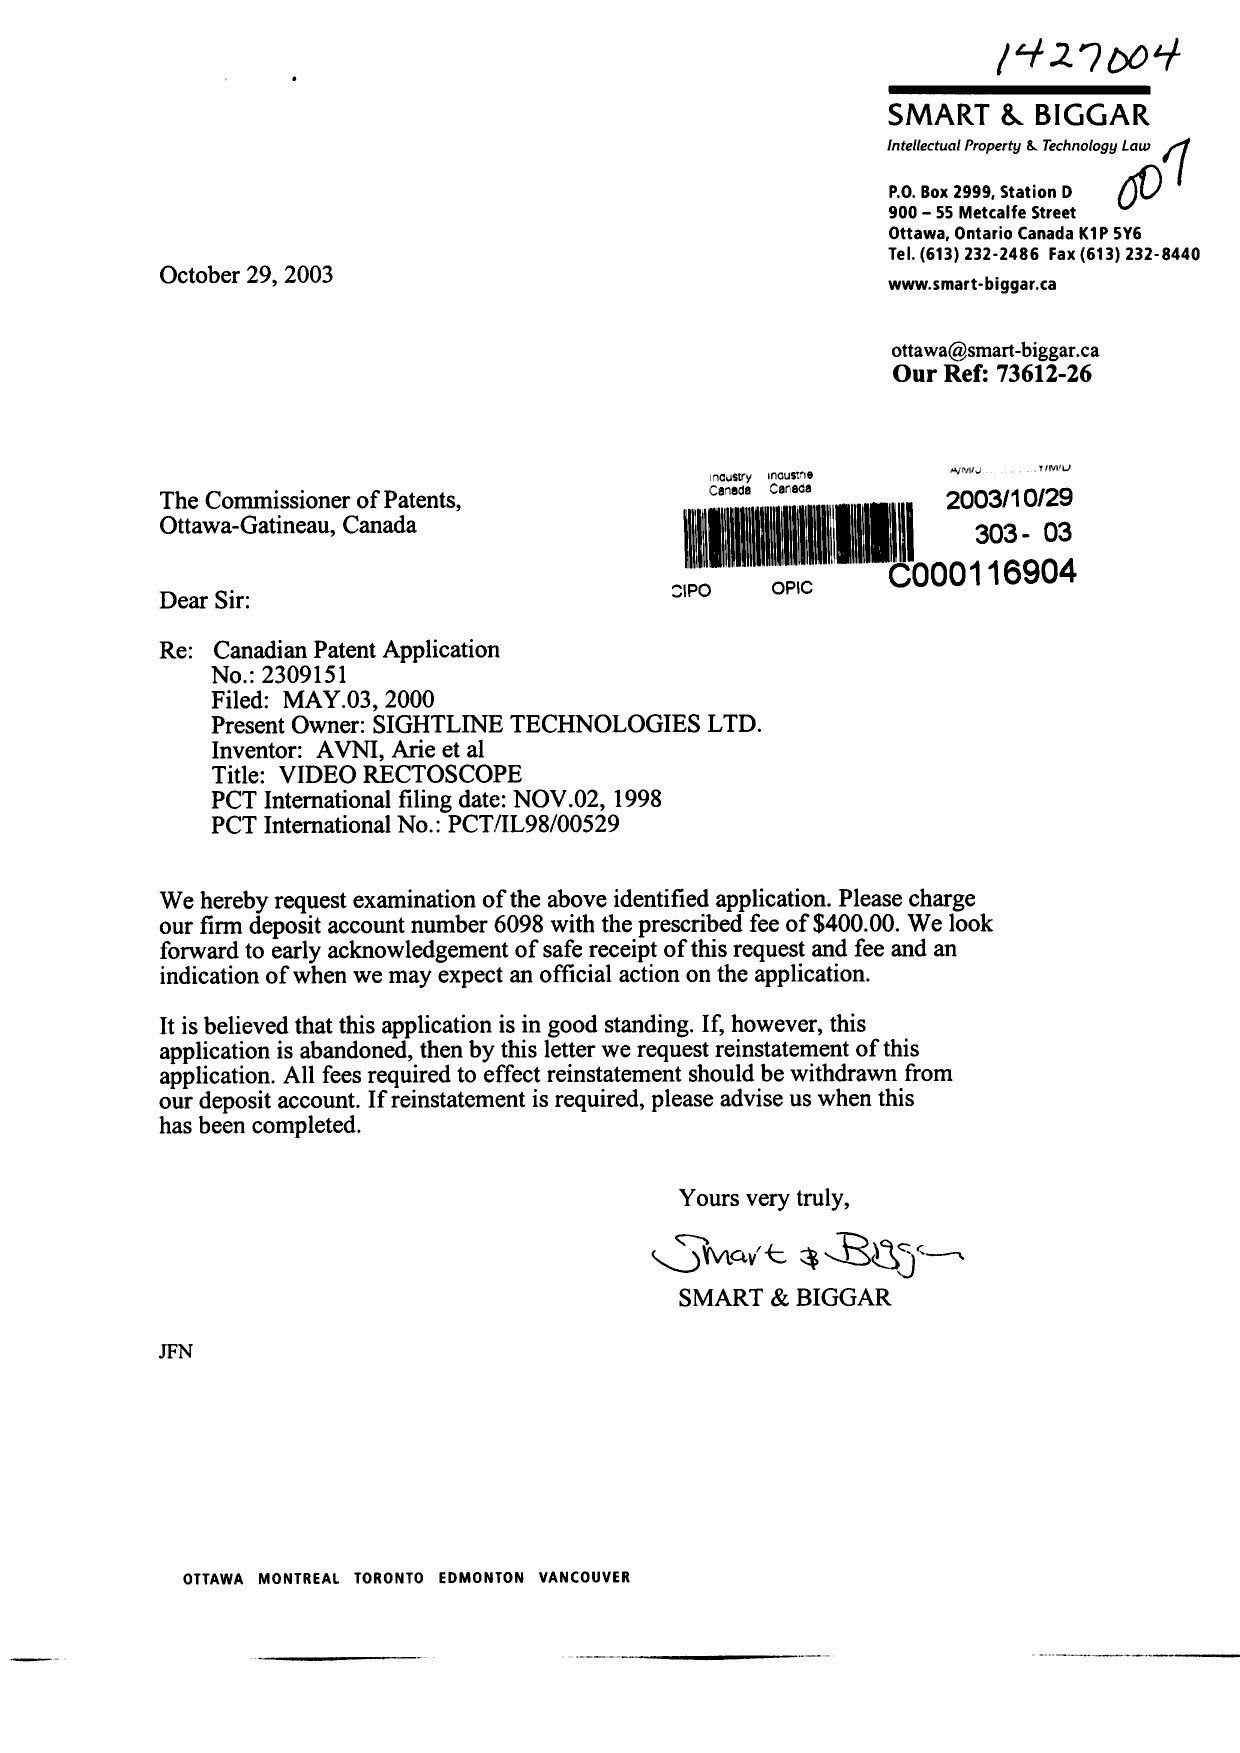 Document de brevet canadien 2309151. Poursuite-Amendment 20031029. Image 1 de 1